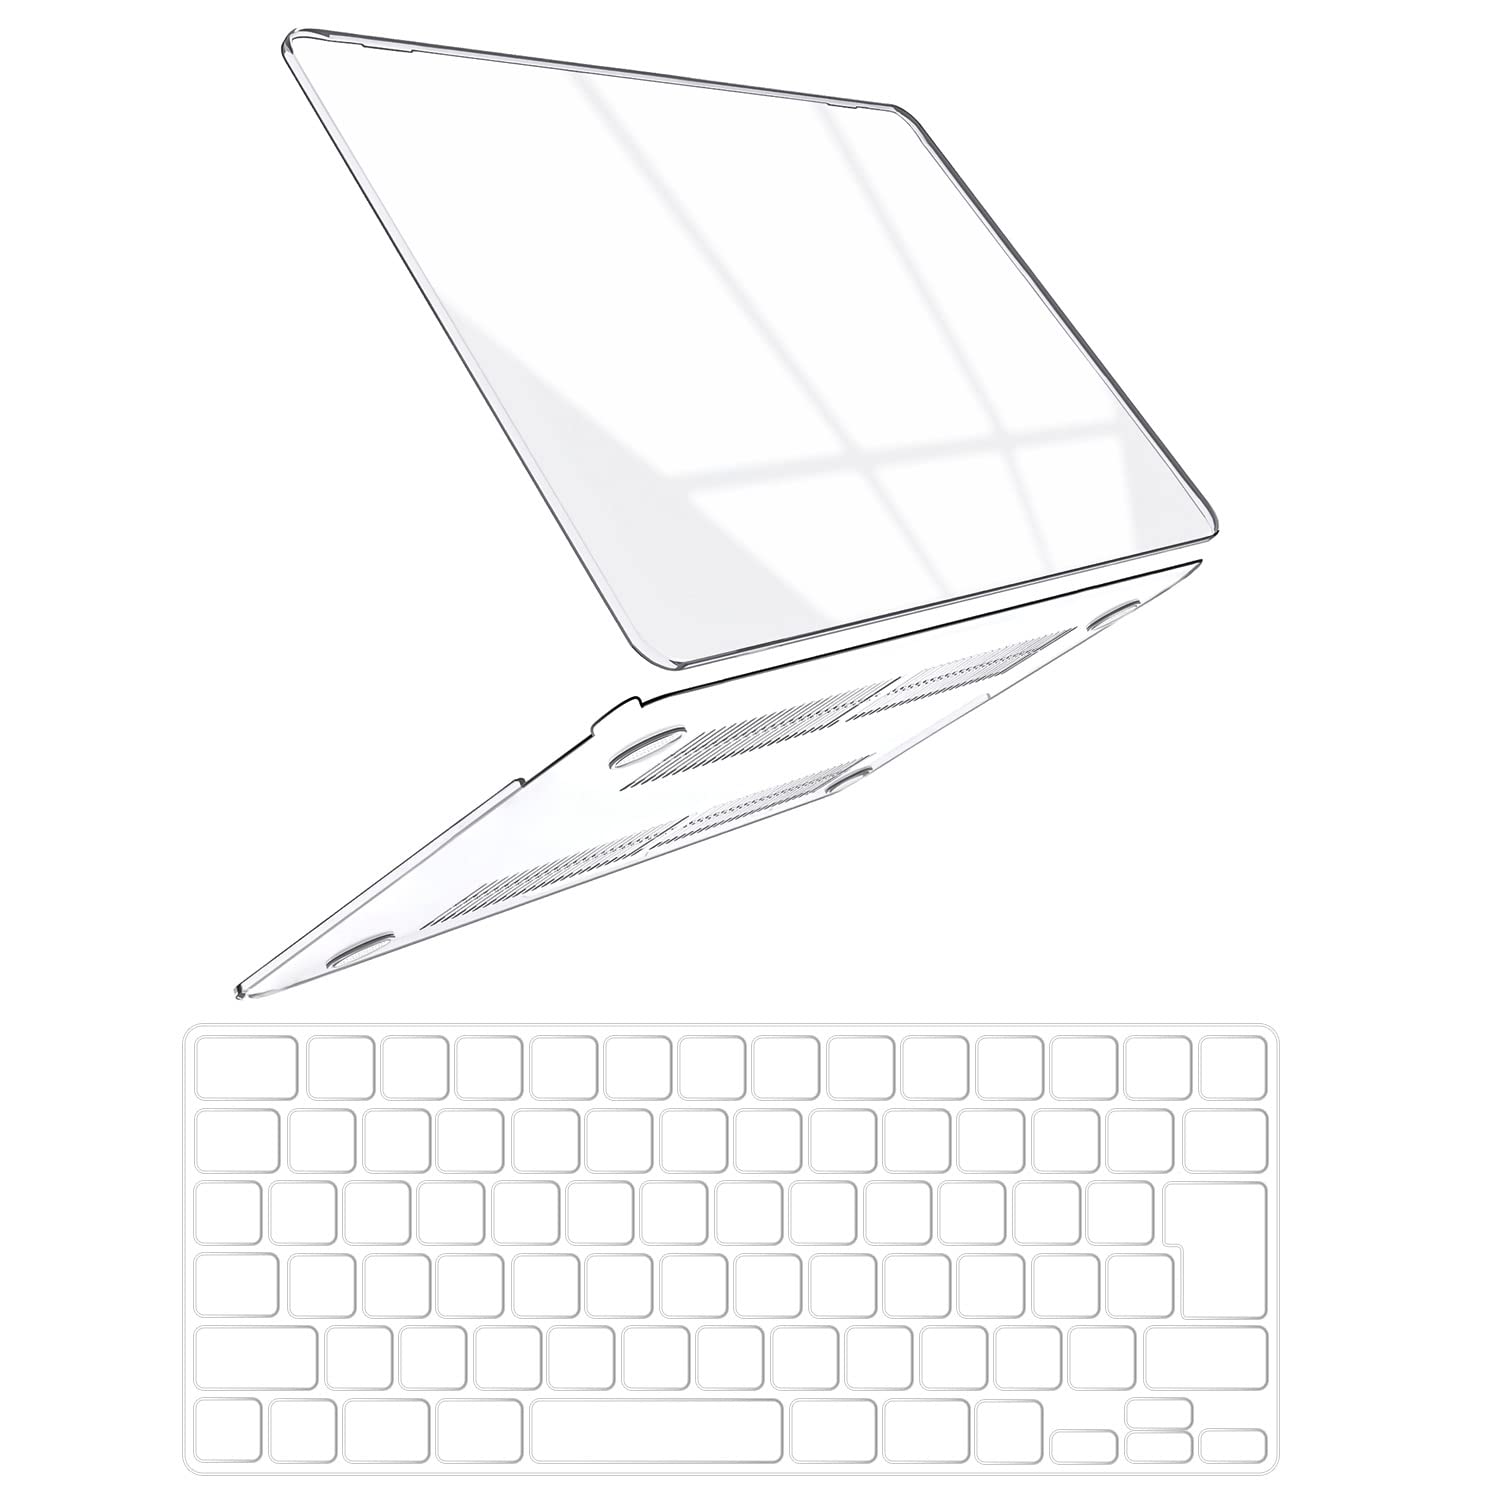 商品情報商品の説明説明 MacBook Air ケース A2681 13.6インチ対応主な仕様 【対応サイズ】2021年発売された New Macbook Pro ケース 14.2 インチ A2442 対応/JISーキーボードカバー 付き。。ご購入前に、必ずお持っているMacBookの底面にある「A」から始まる4桁のモデルナンバー(A1XXX)をご確認ください。br【便利自由】機器にぴったり合わせて、とりつけたり、とりはずしたりすることが簡単にできます。何度開閉してもMacBook本体の邪魔になりません。br【放熱設計・ゴム足】下部のカバーは排気口をふさがないデザインで、熱が過剰にこもることを防げます。 また、4つの外れにくいのゴム足により、テーブルとの摩擦を増強し、外れに滑りにくい。br【安全に使用可能】ケース裏側の正確なカッティング加工により、ケースの穴がMacBookの通気口にぴったりと合っているため、熱を素早く放出することができます。滑り止めゴムパッドは、使用中にMacBookが滑るのを防ぎます。br【取り付けと取り外しが簡単】Macbookケース - スナップフィットケース付きの私達のケースは取り付けと取り外しが簡単です。スリムなデザインは持ち運びが簡単です。トリムデザイン、バッテリーチェックボタン、USBおよびSDカードポート、すべてアクセス可能、ケースを取り外す必要はありません。